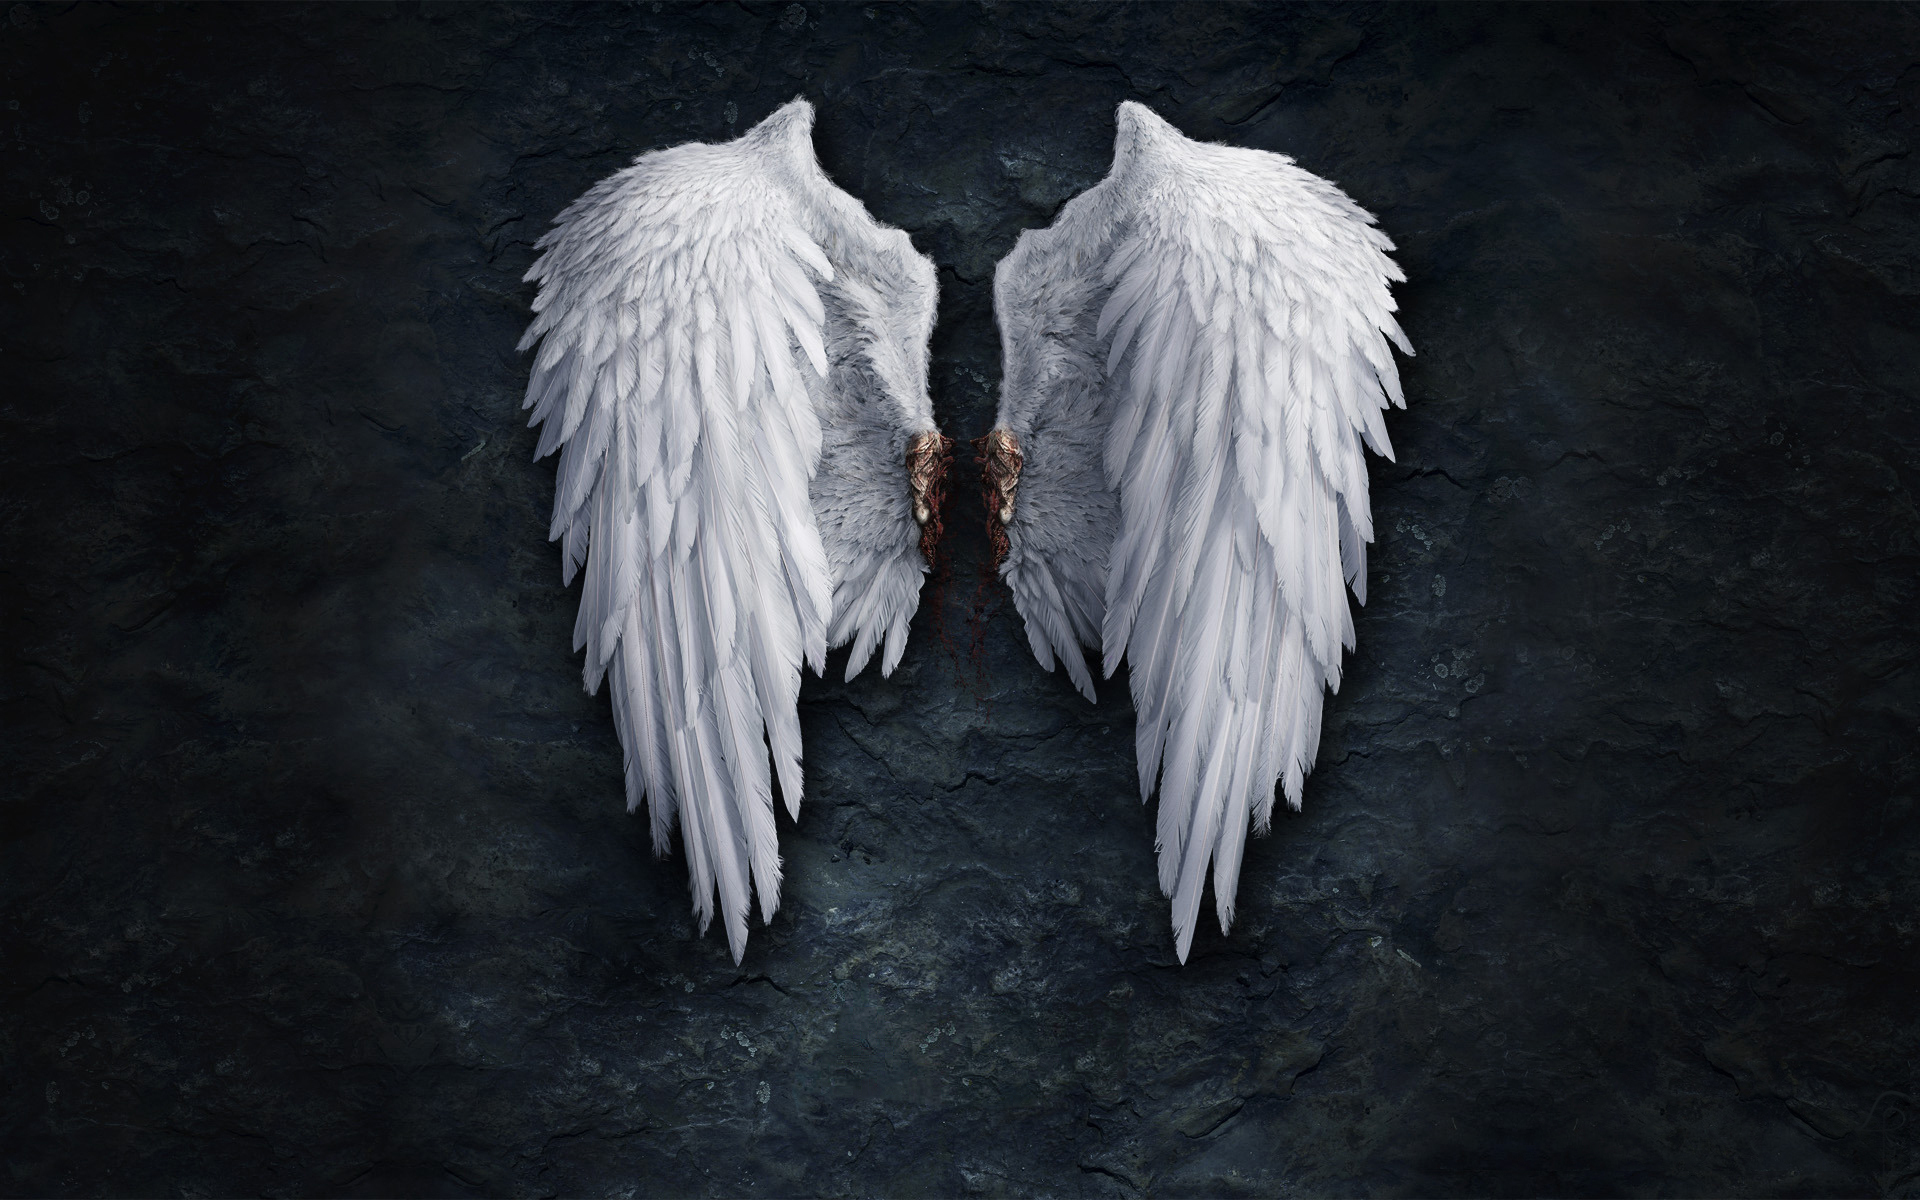 3d обои Оторванные ангельские крылья, на них виднеется кровь  ретушь # 76255